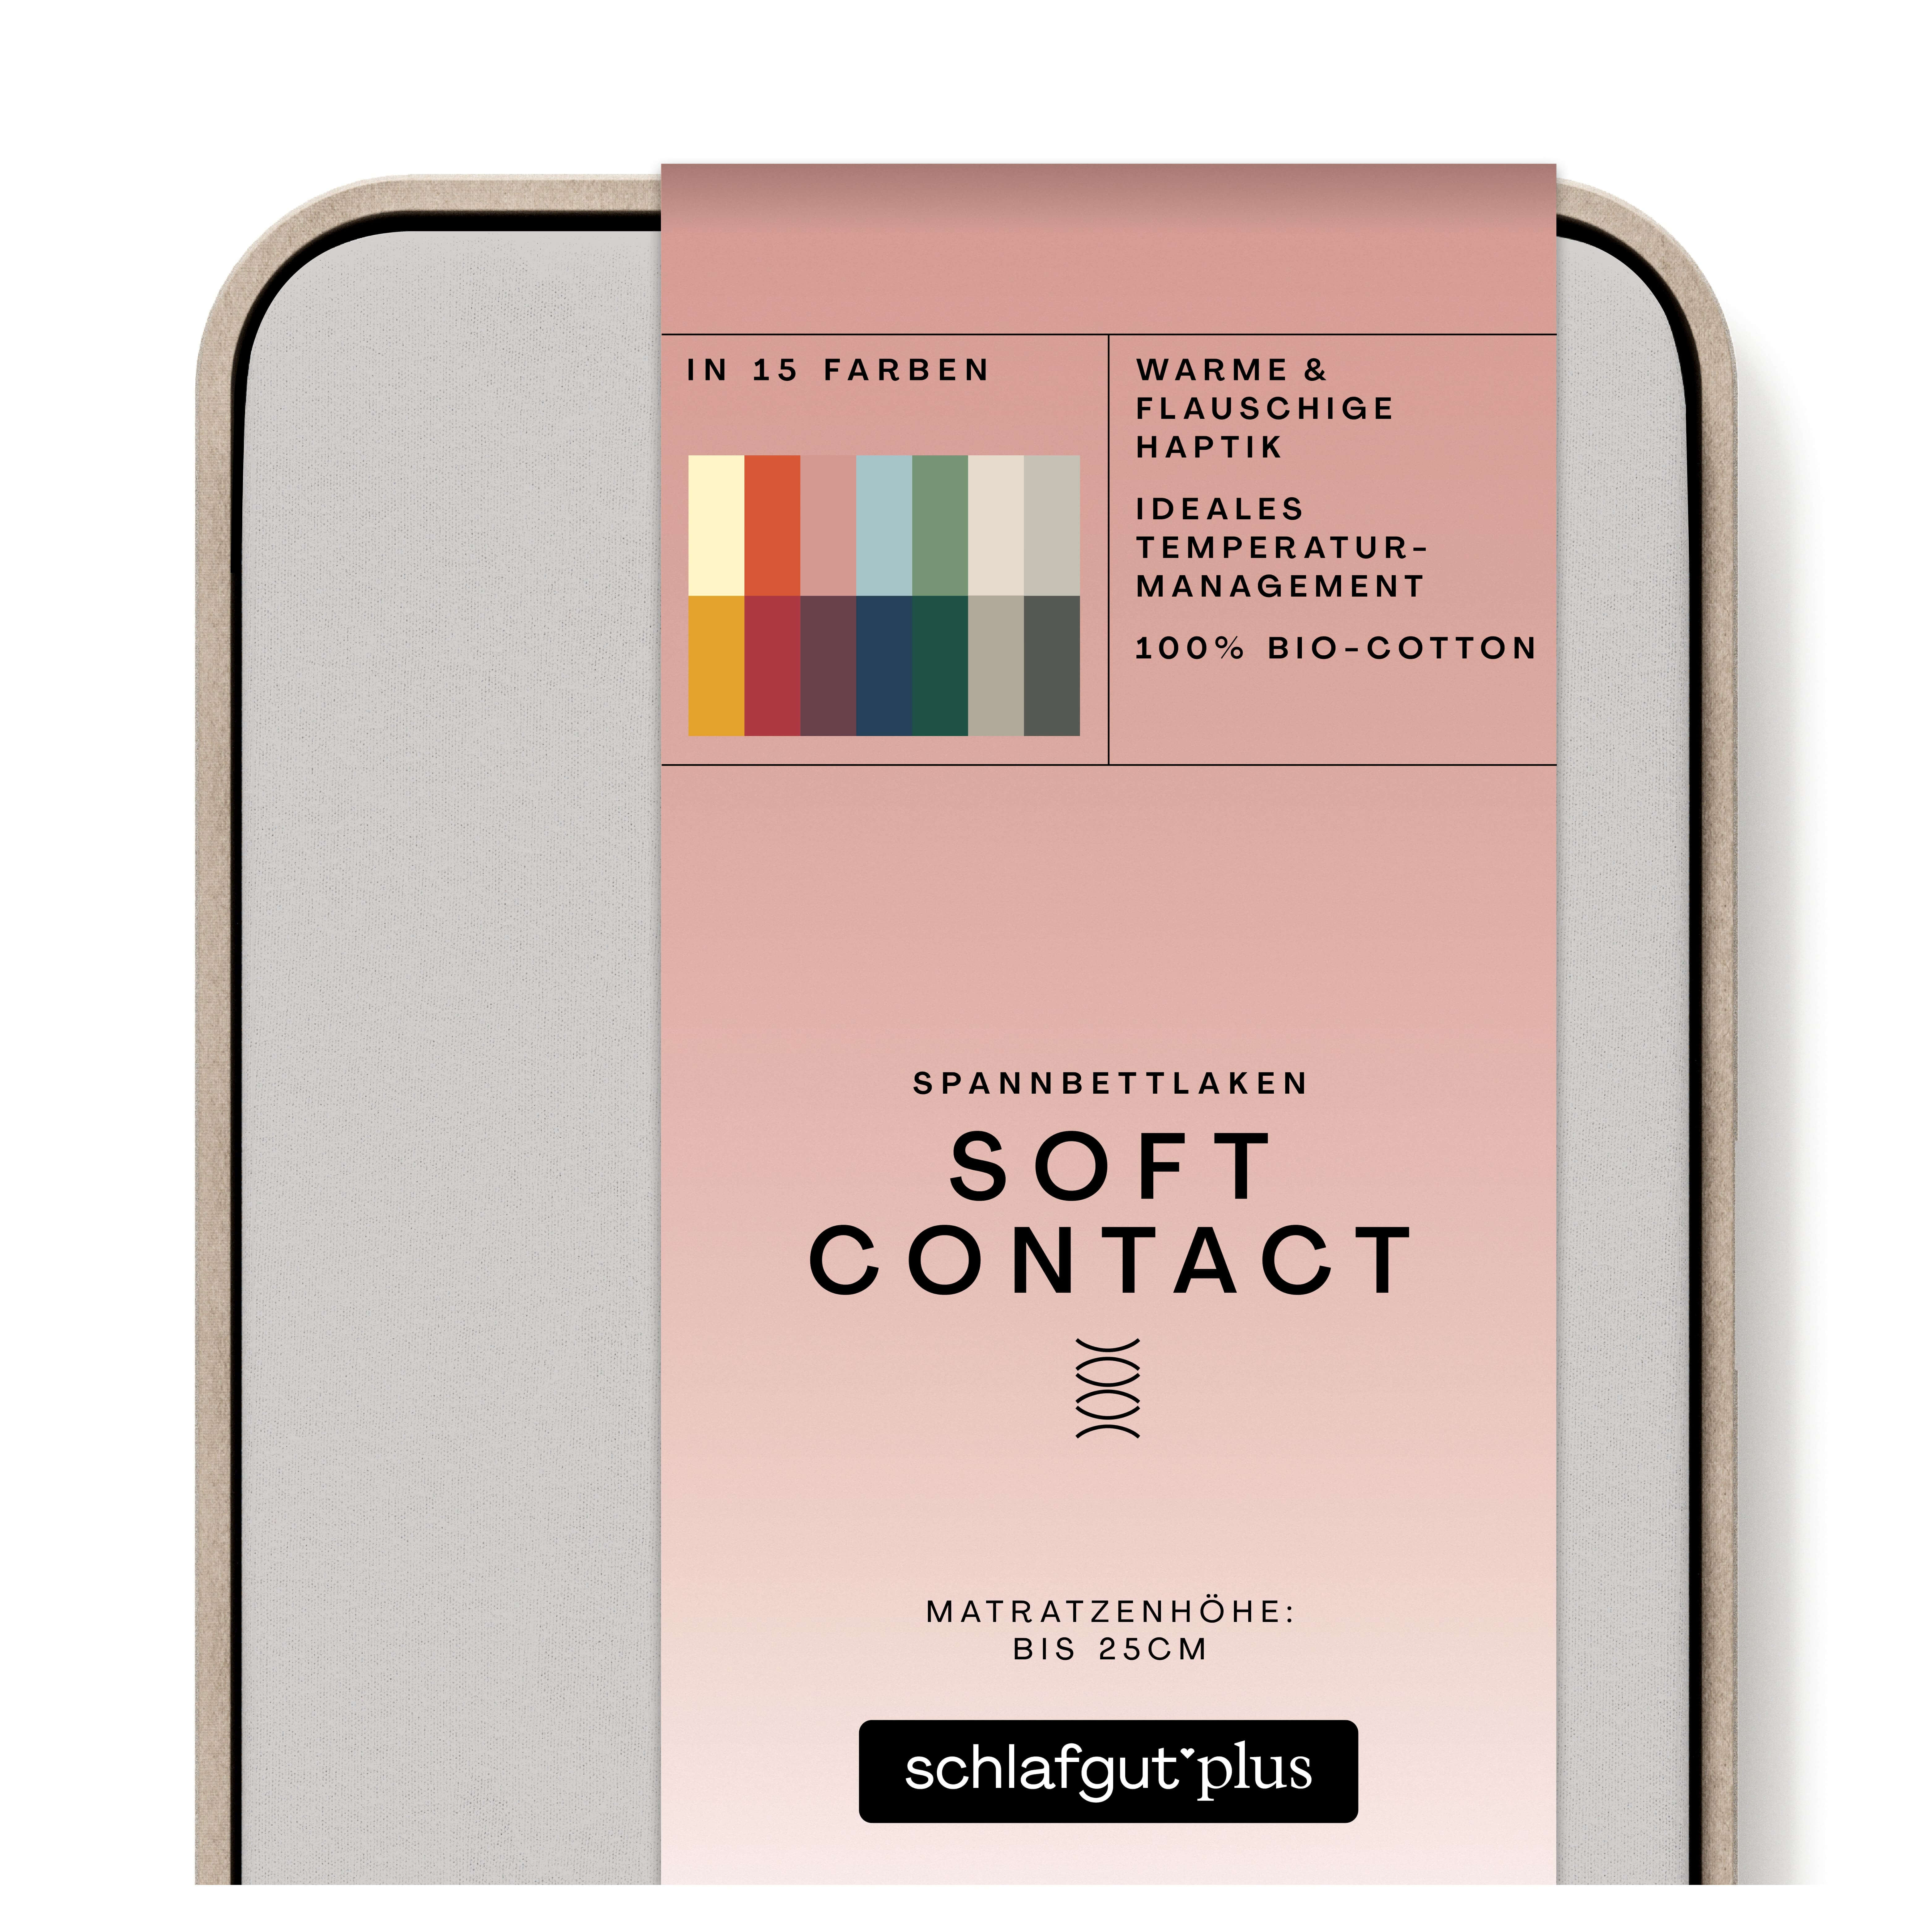 Das Produktbild vom Spannbettlaken der Reihe Soft Contact in Farbe grey light von Schlafgut